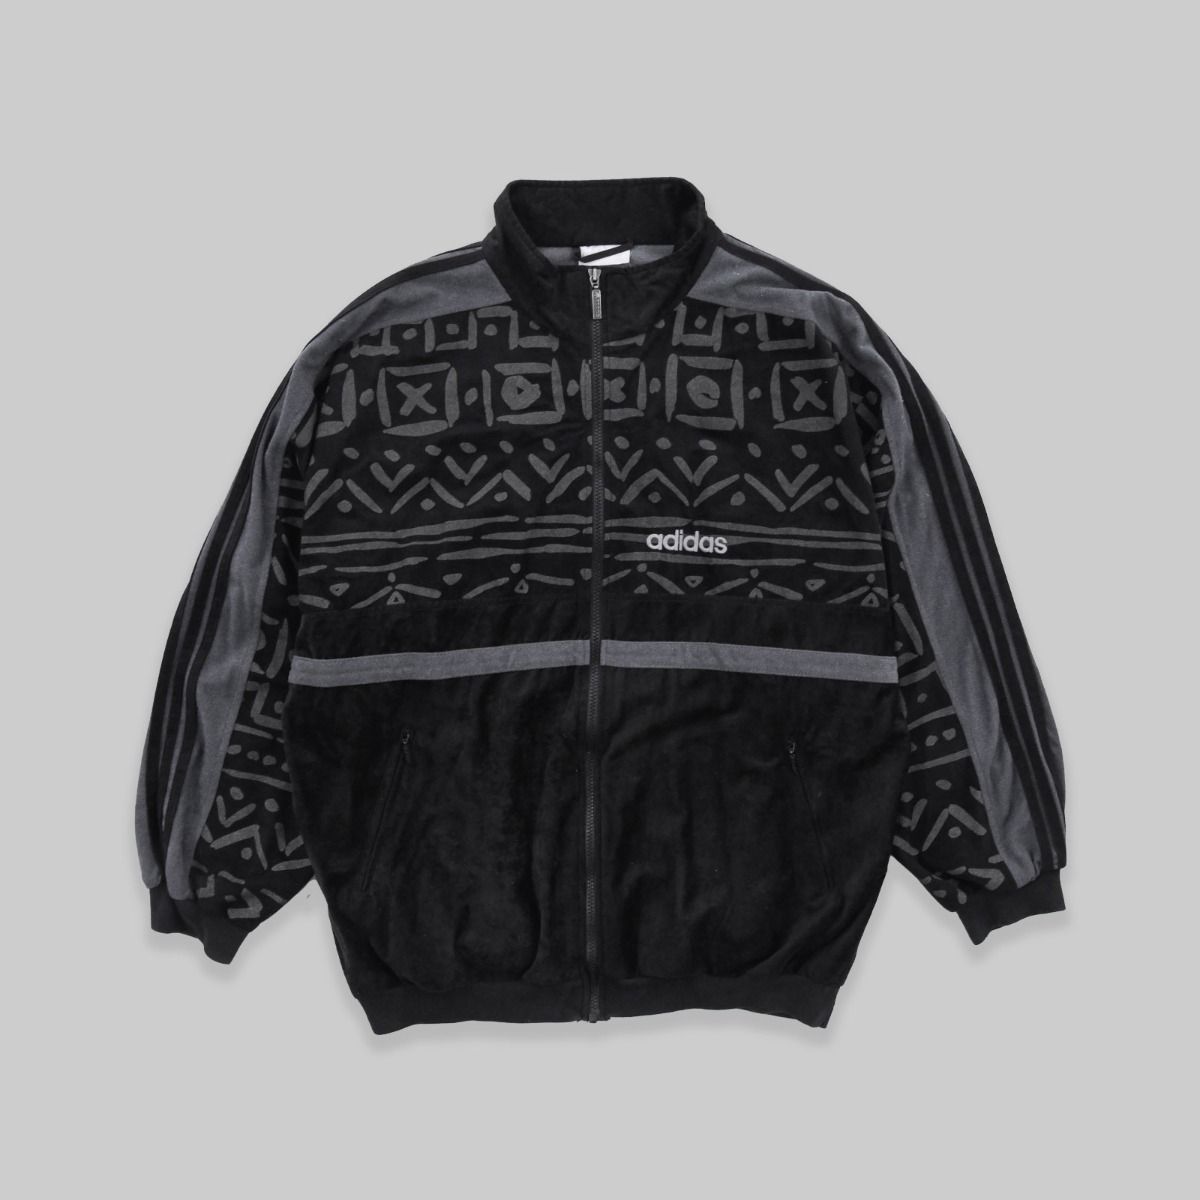 Adidas Early 1990s Crushed Velvet Track Jacket